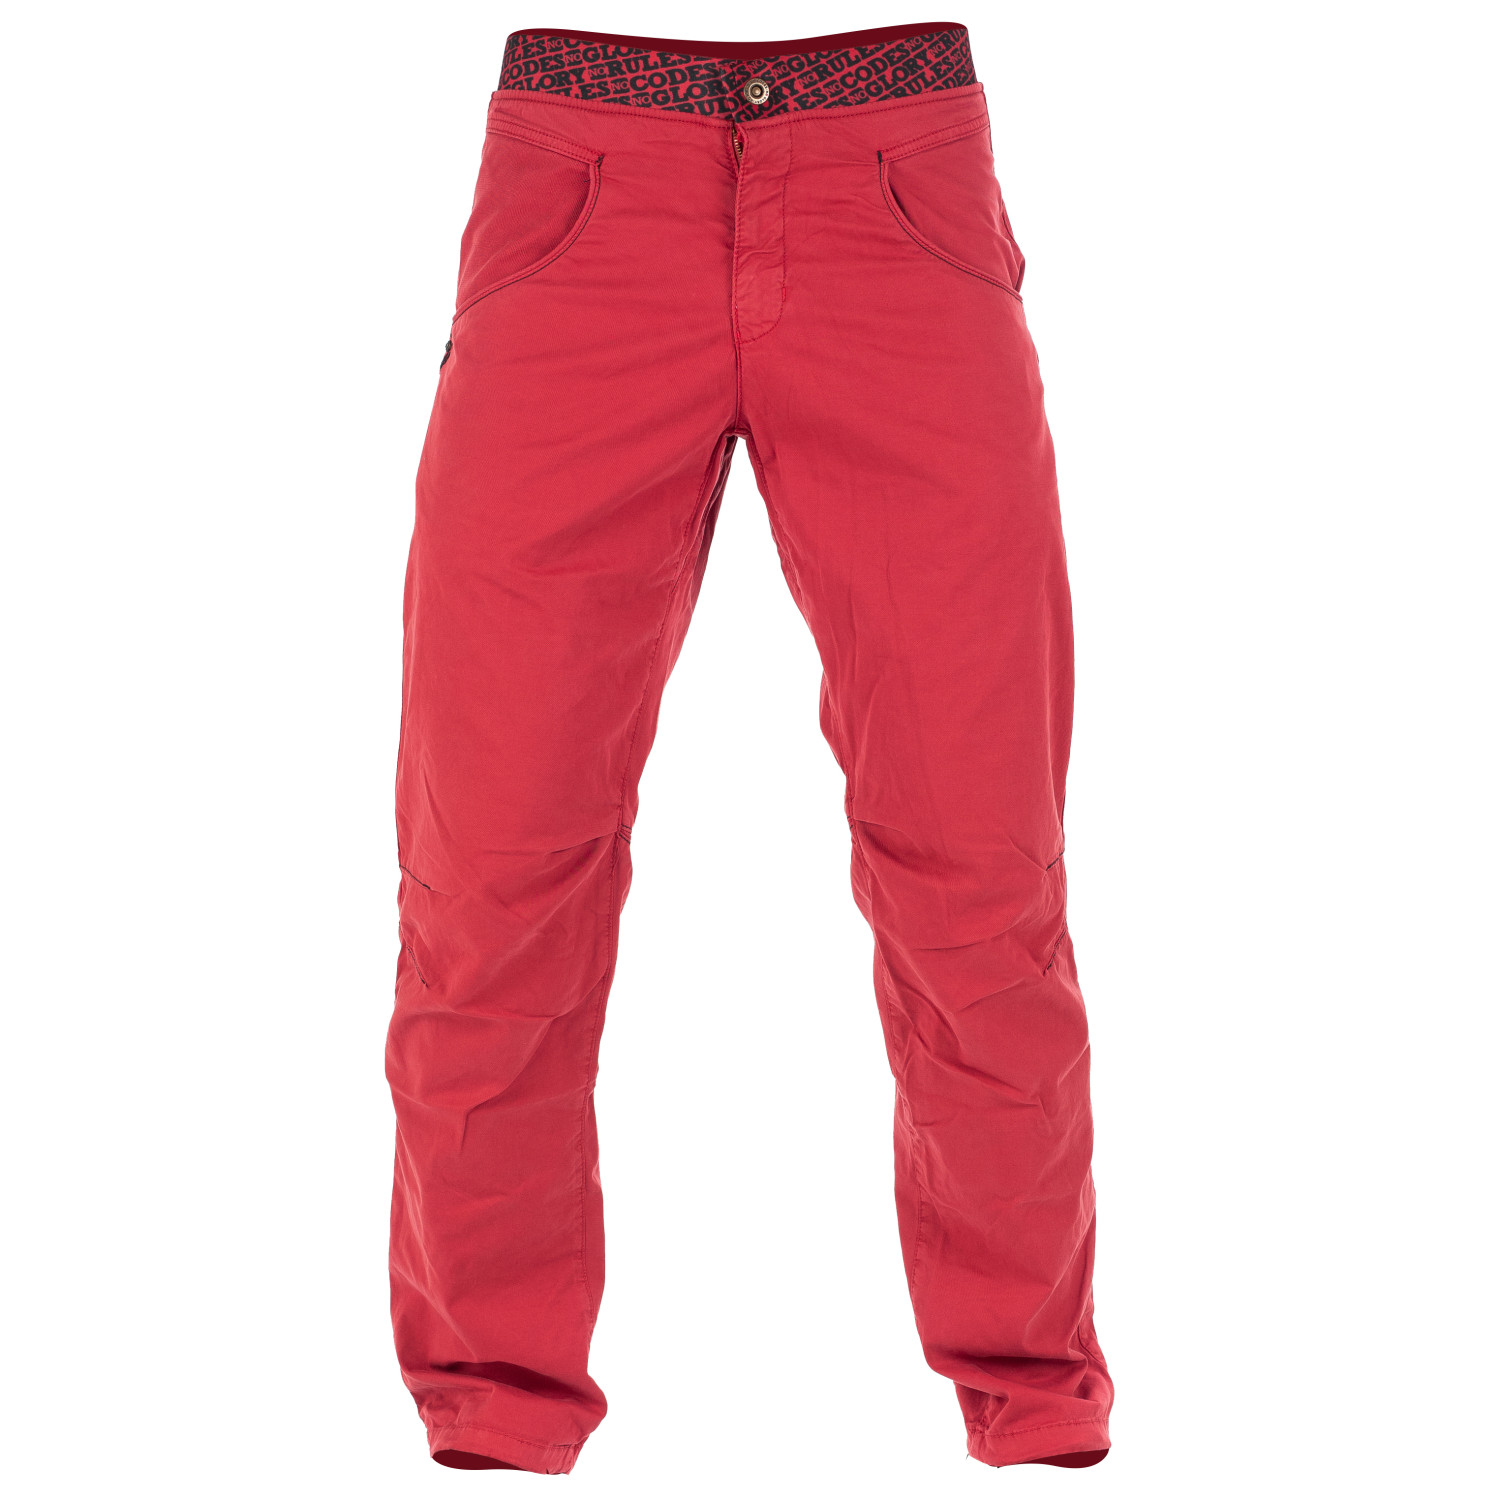 Альпинистские штаны Nograd Sahel Pant, цвет Brick